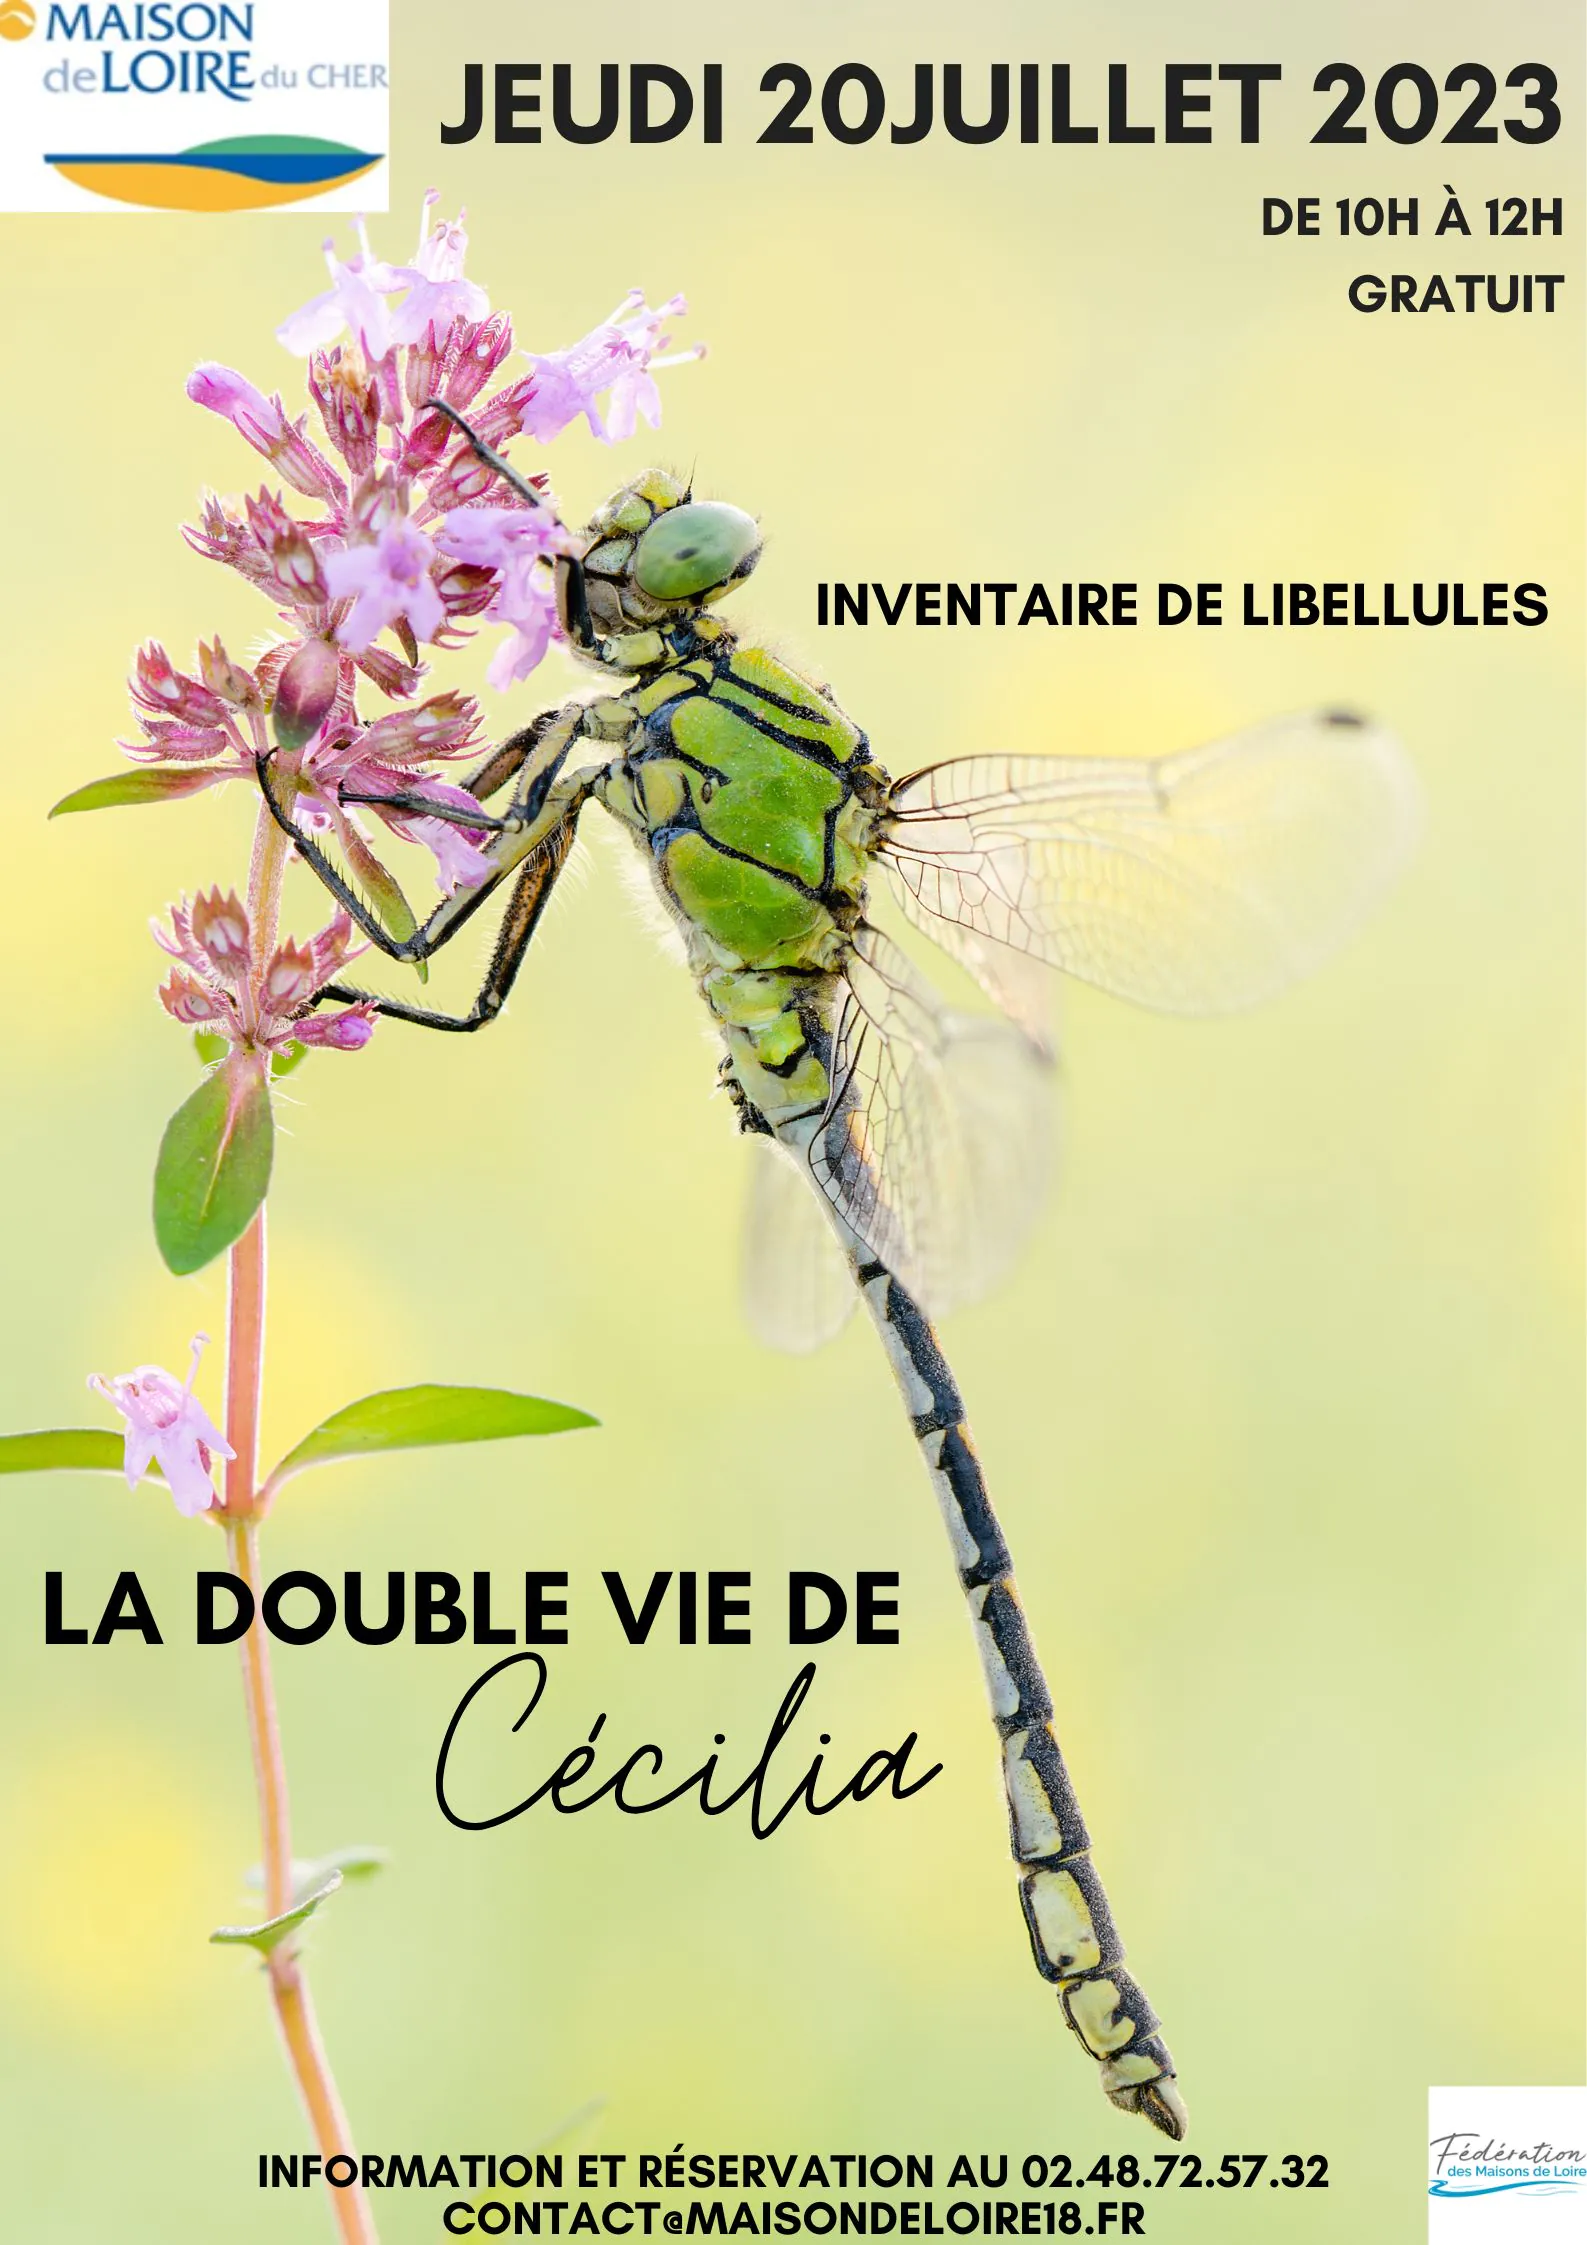 La double vie de Cécilia : découverte et inventaire des libellules